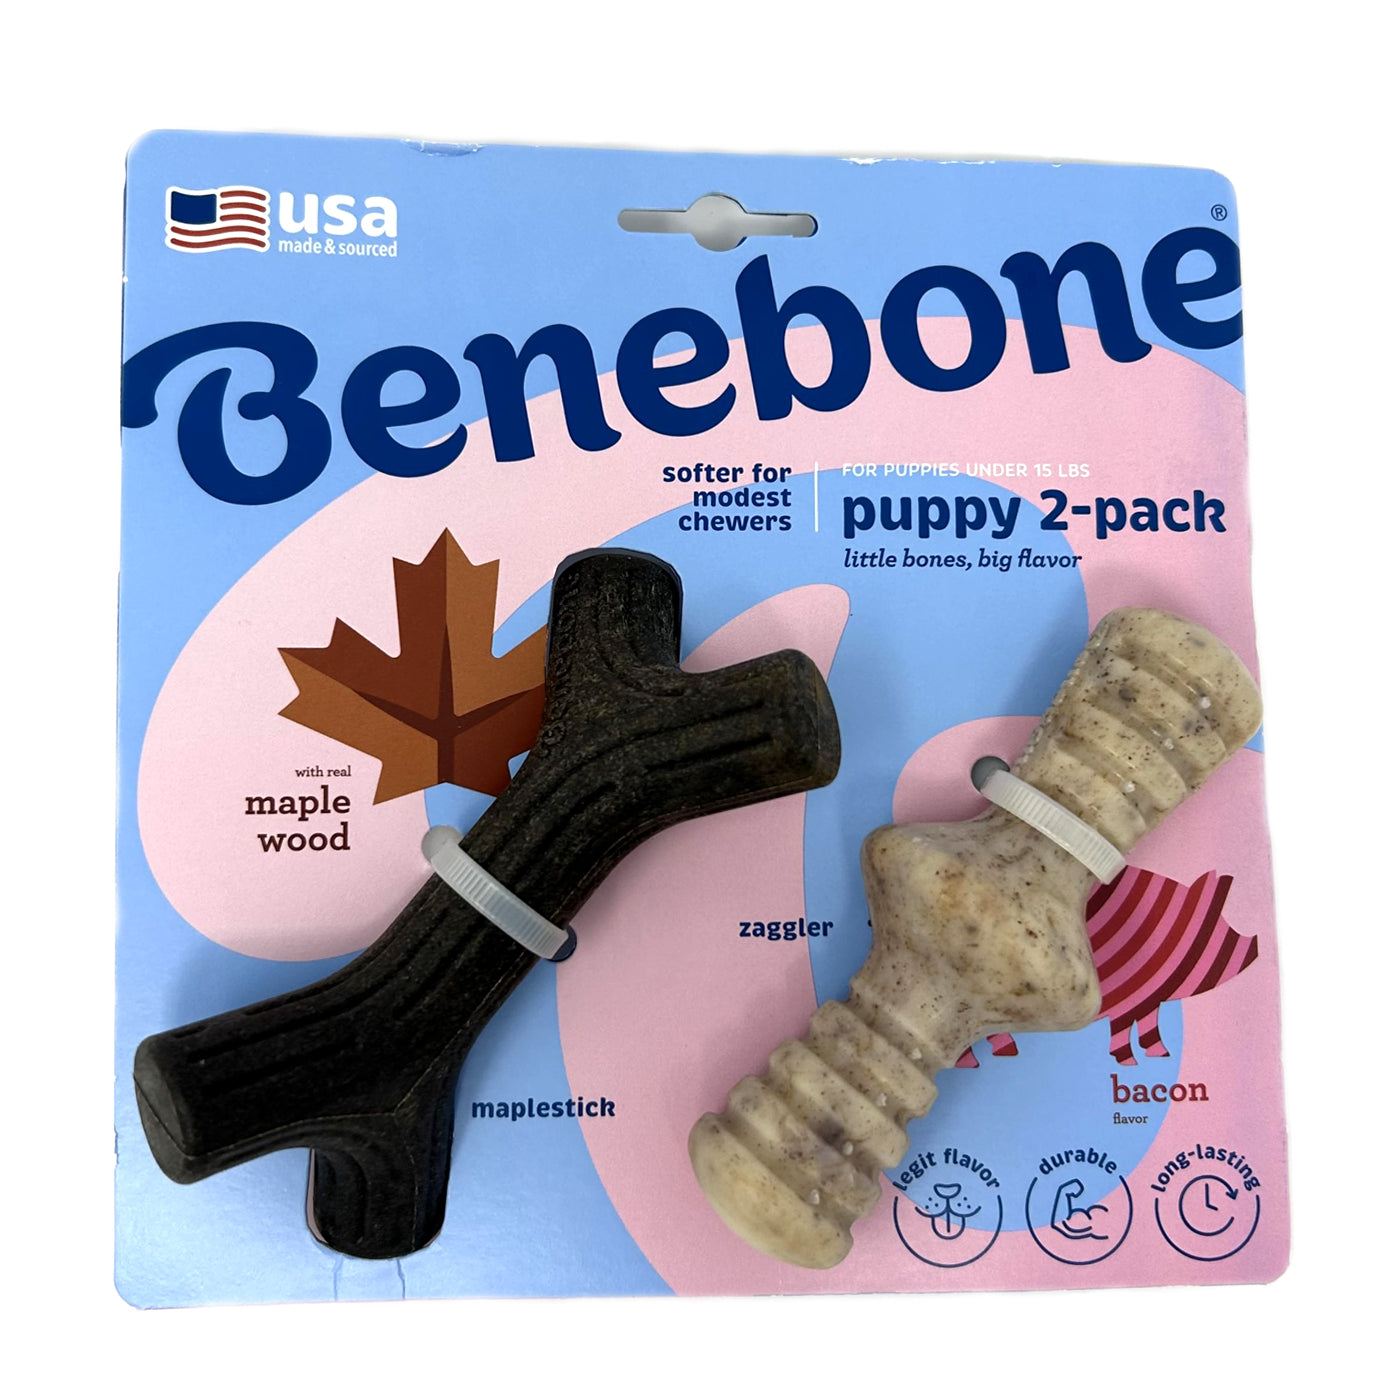 2 Pack Puppy Bones